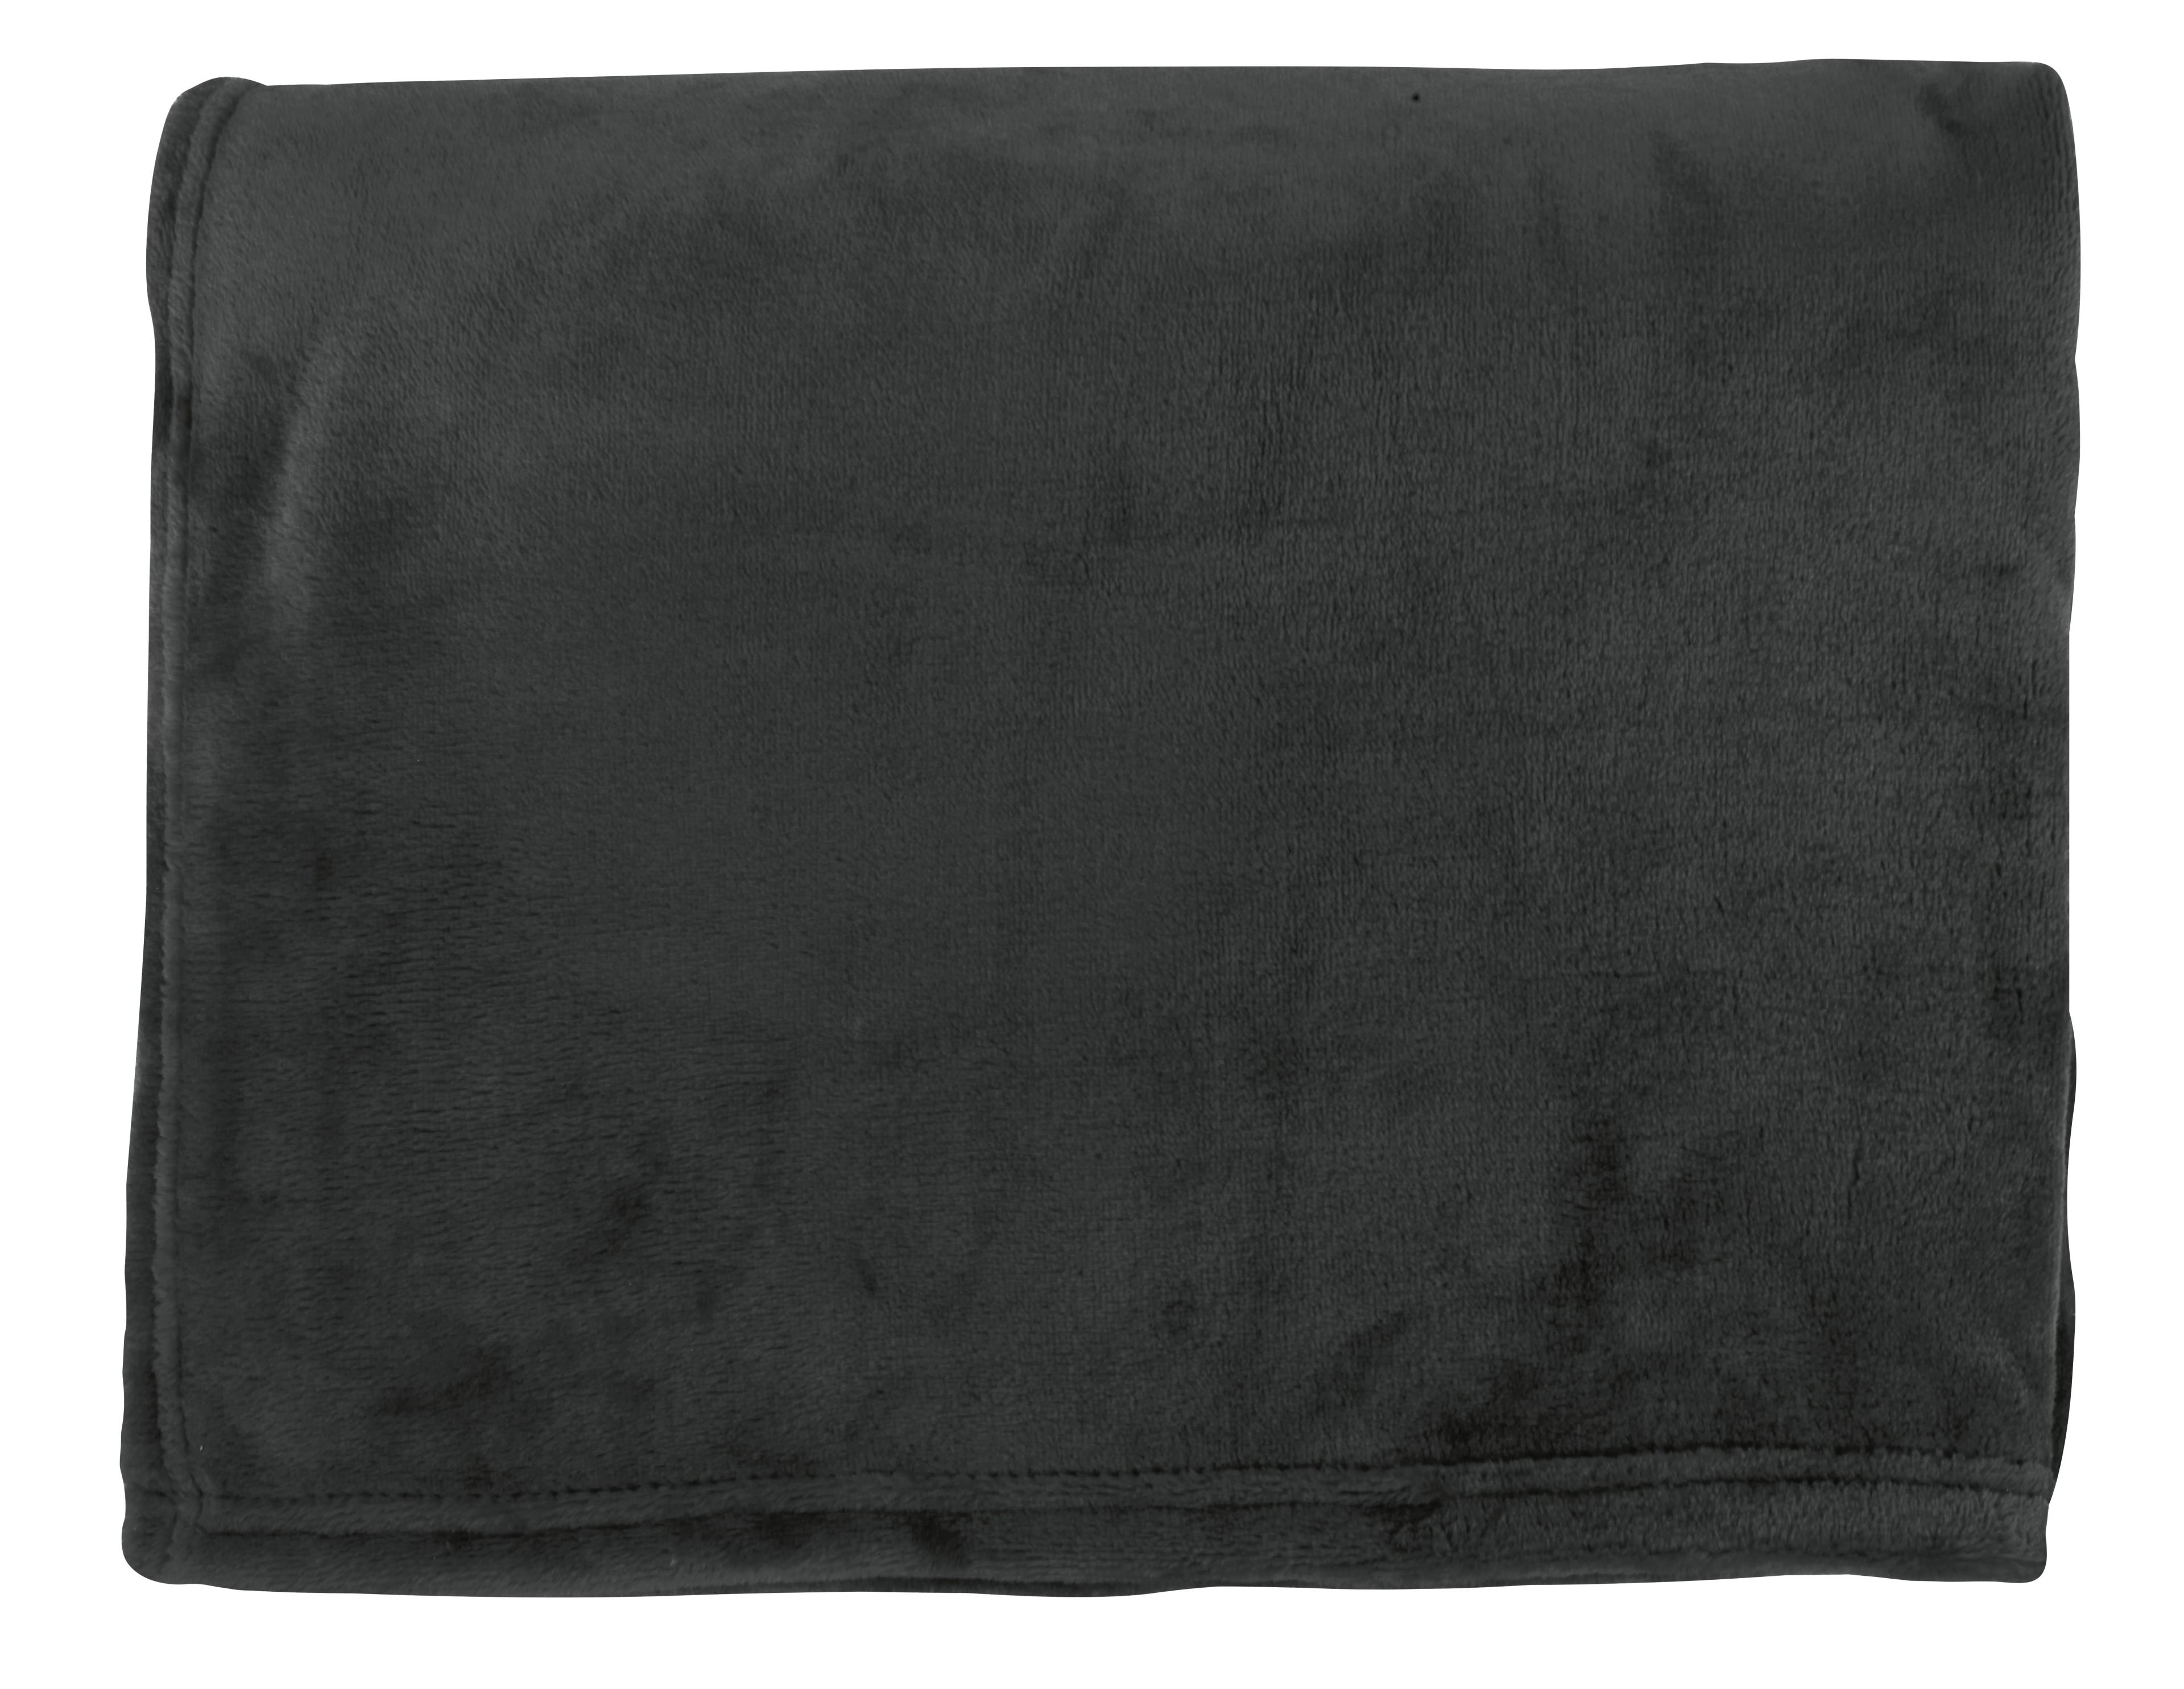 Scott Flannel Fleece Blanket 17 of 21